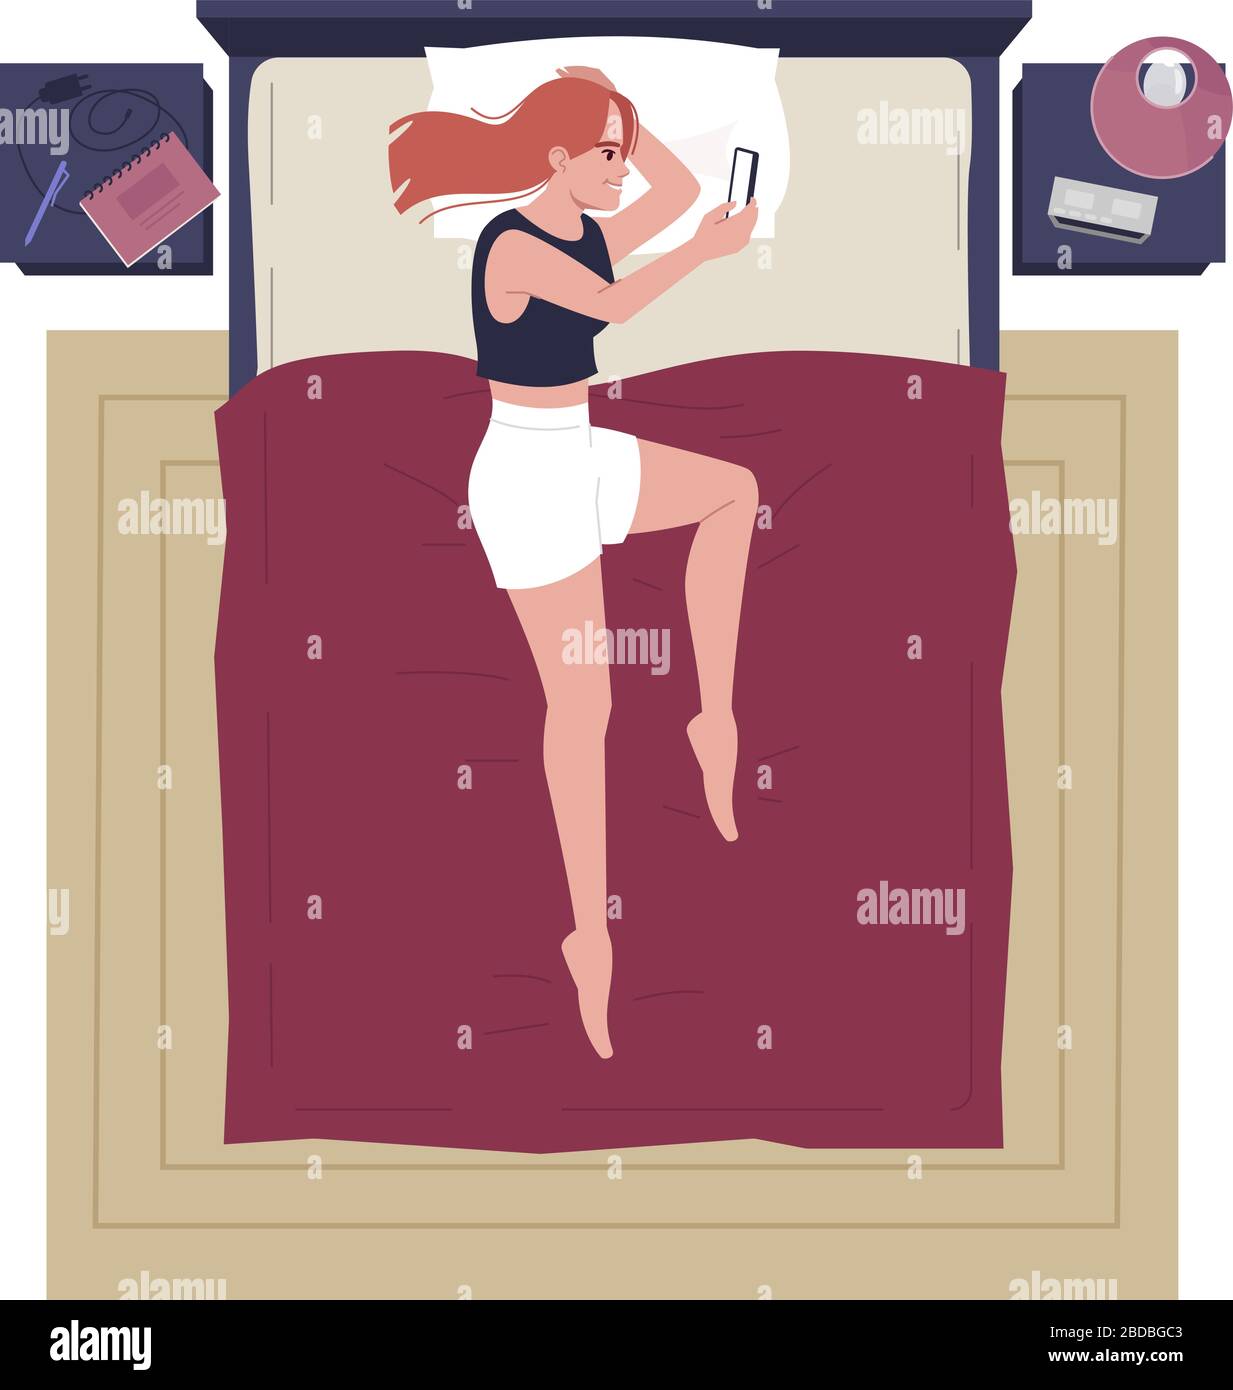 Junge Frau allein im Bett liegend, mit halbflacher RGB-Farbvektorillustration für Mobiltelefone. Schöne Dame im Schlafzimmer chatten mit Telefon Draufsicht Stock Vektor